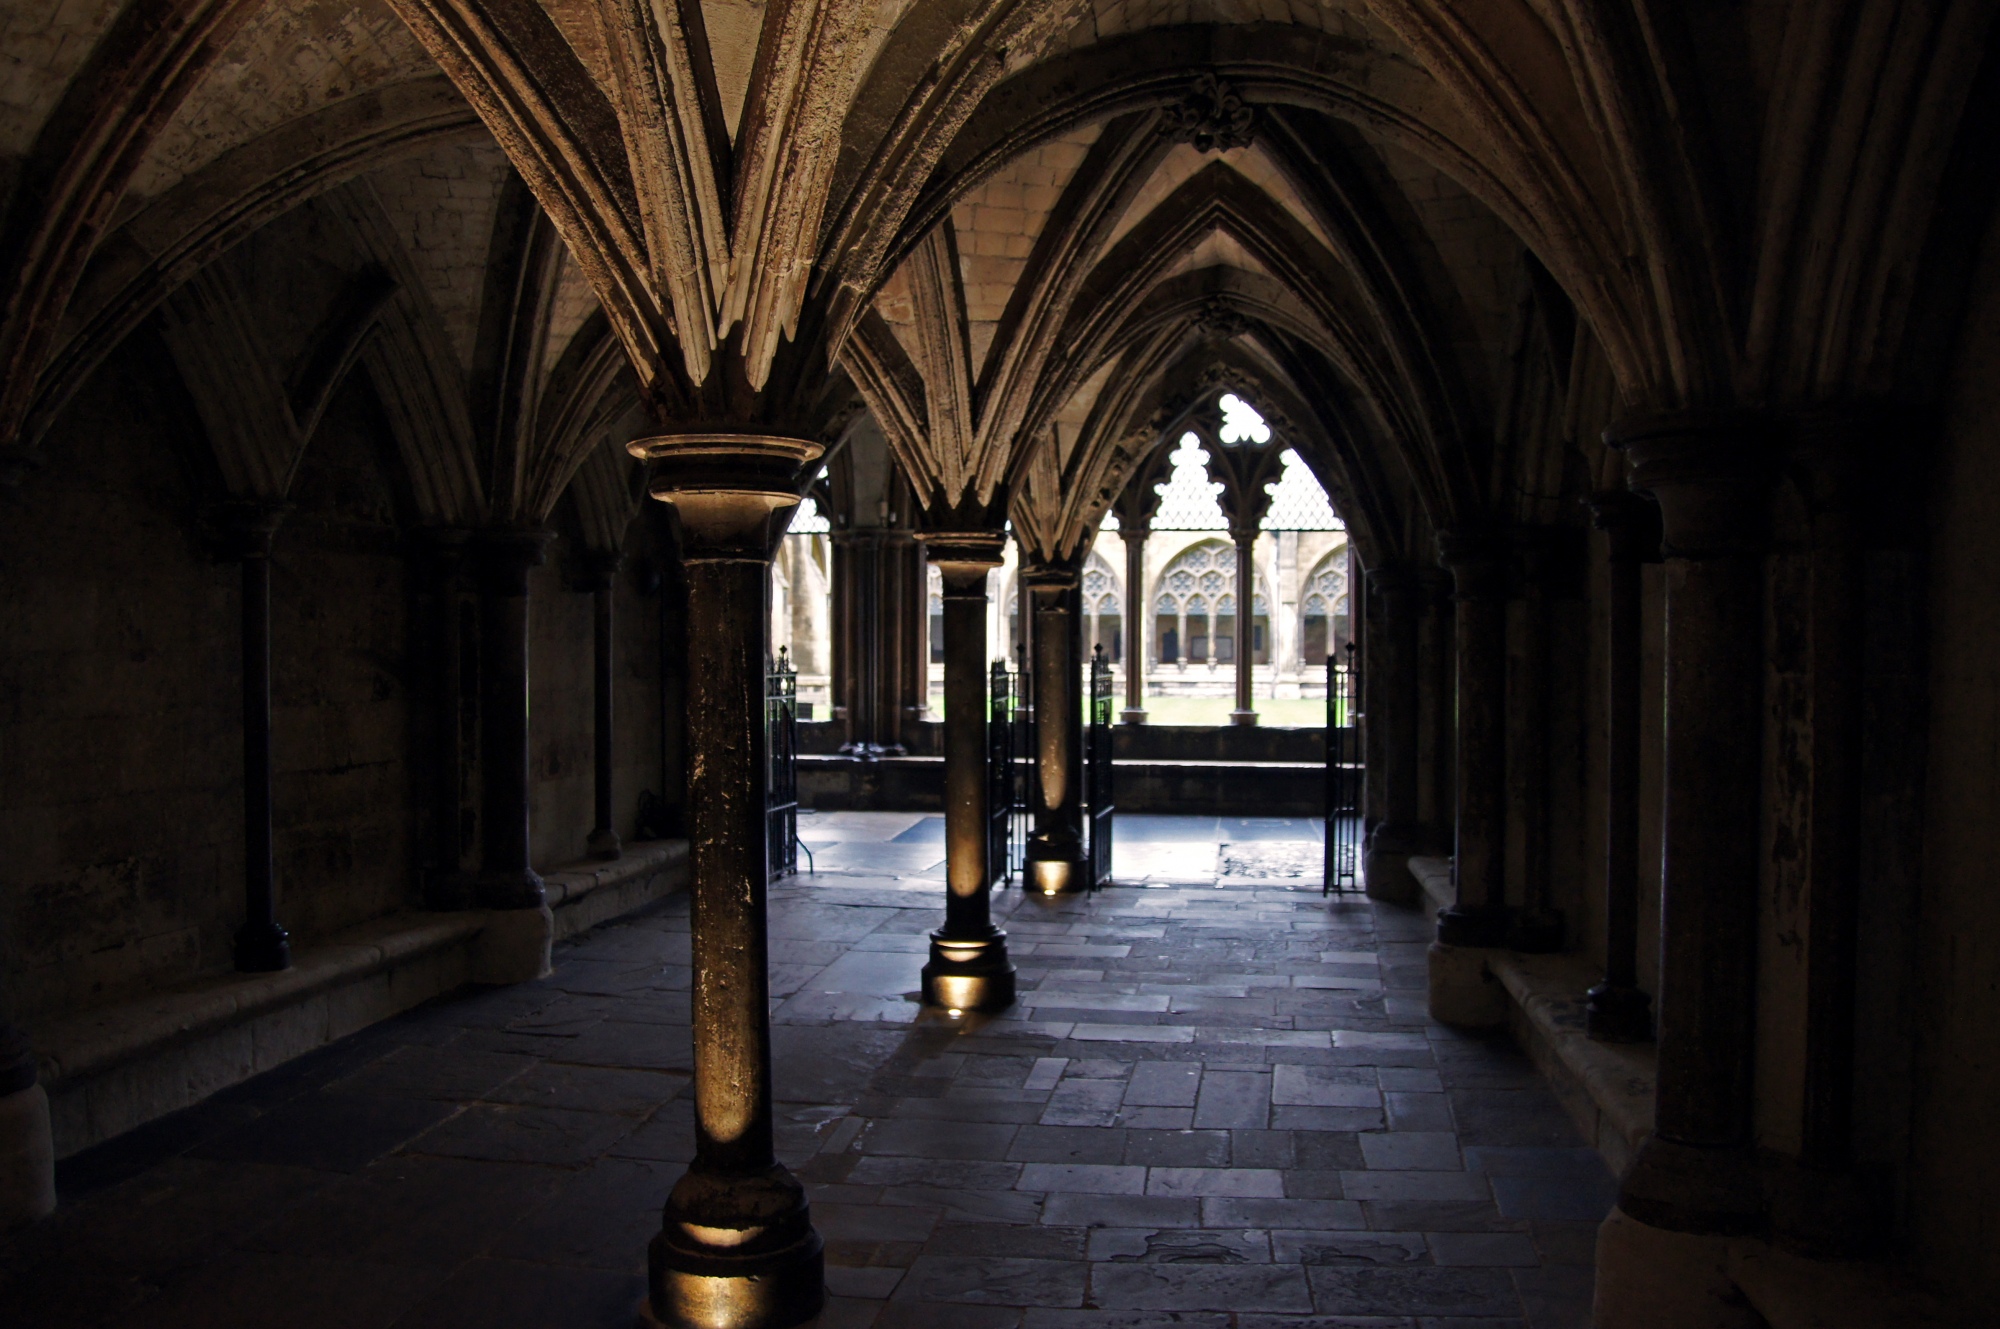 Inside Westminster Abbey